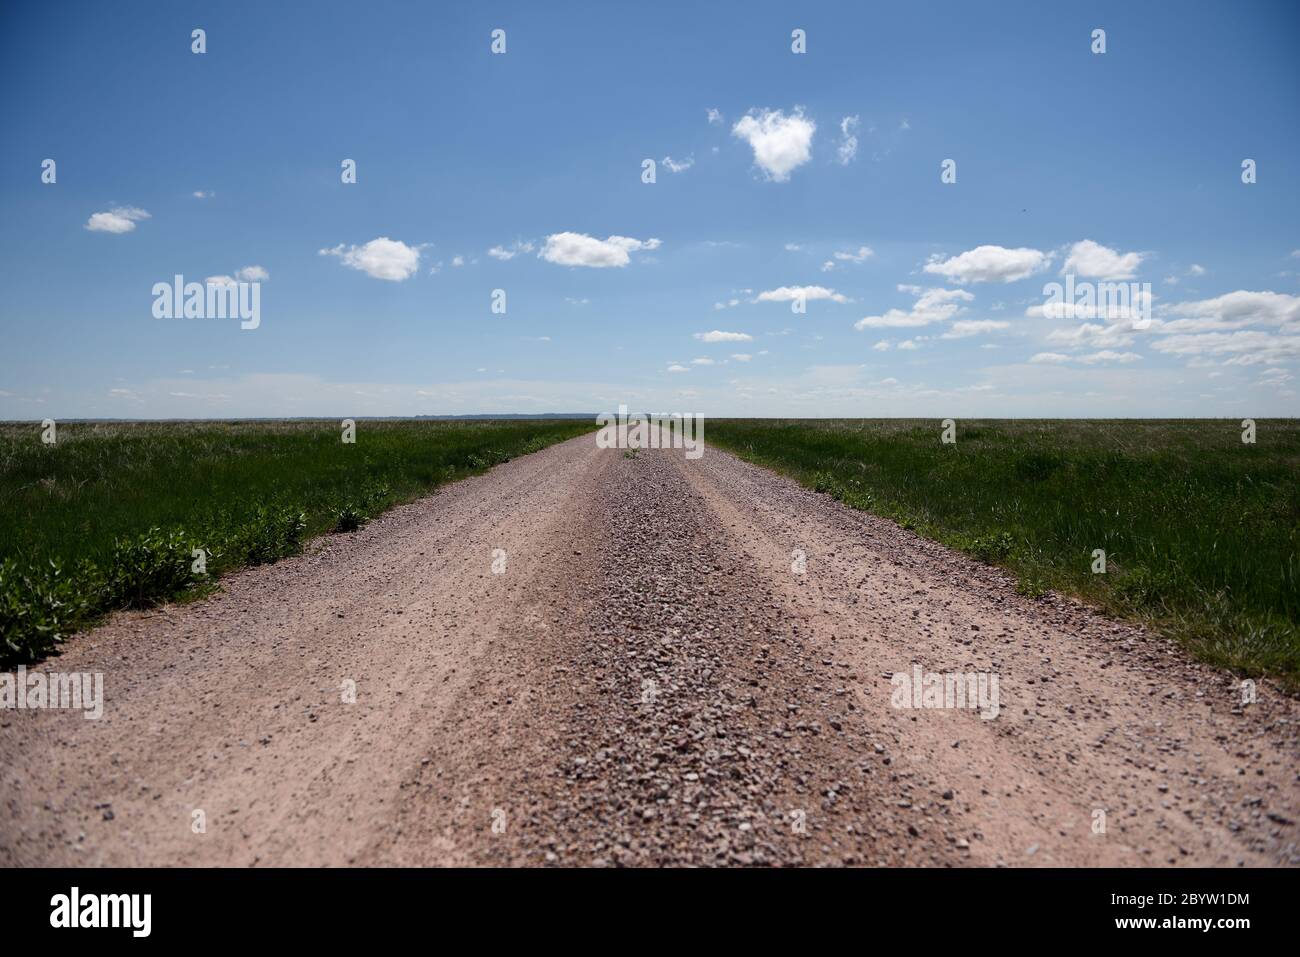 Una strada sterrata rurale deserta attraverso campi con cielo e nuvole che conducono all'orizzonte Foto Stock